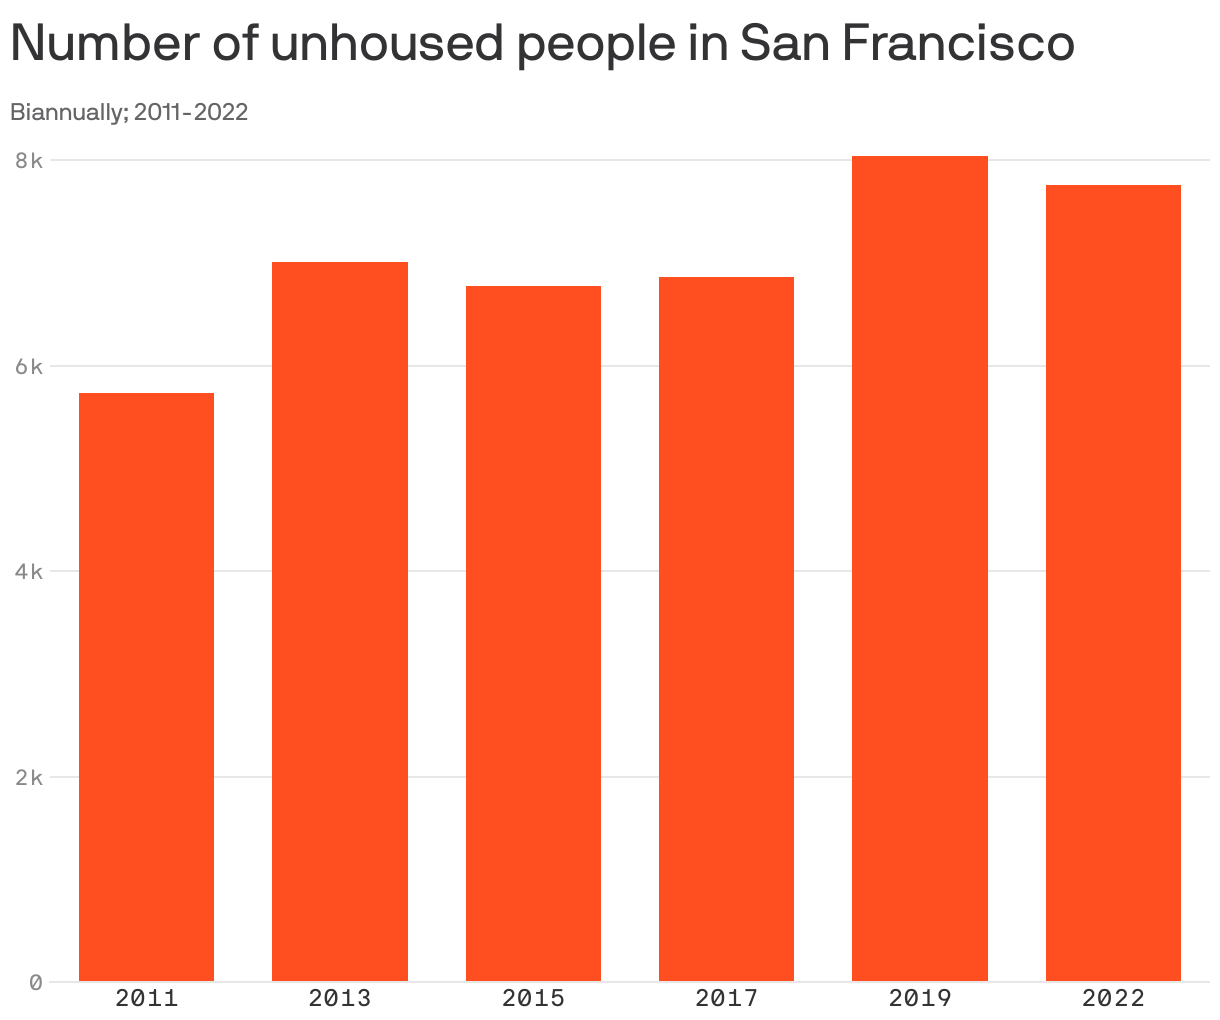 ¿Qué porcentaje de la población de San Francisco no tiene hogar?